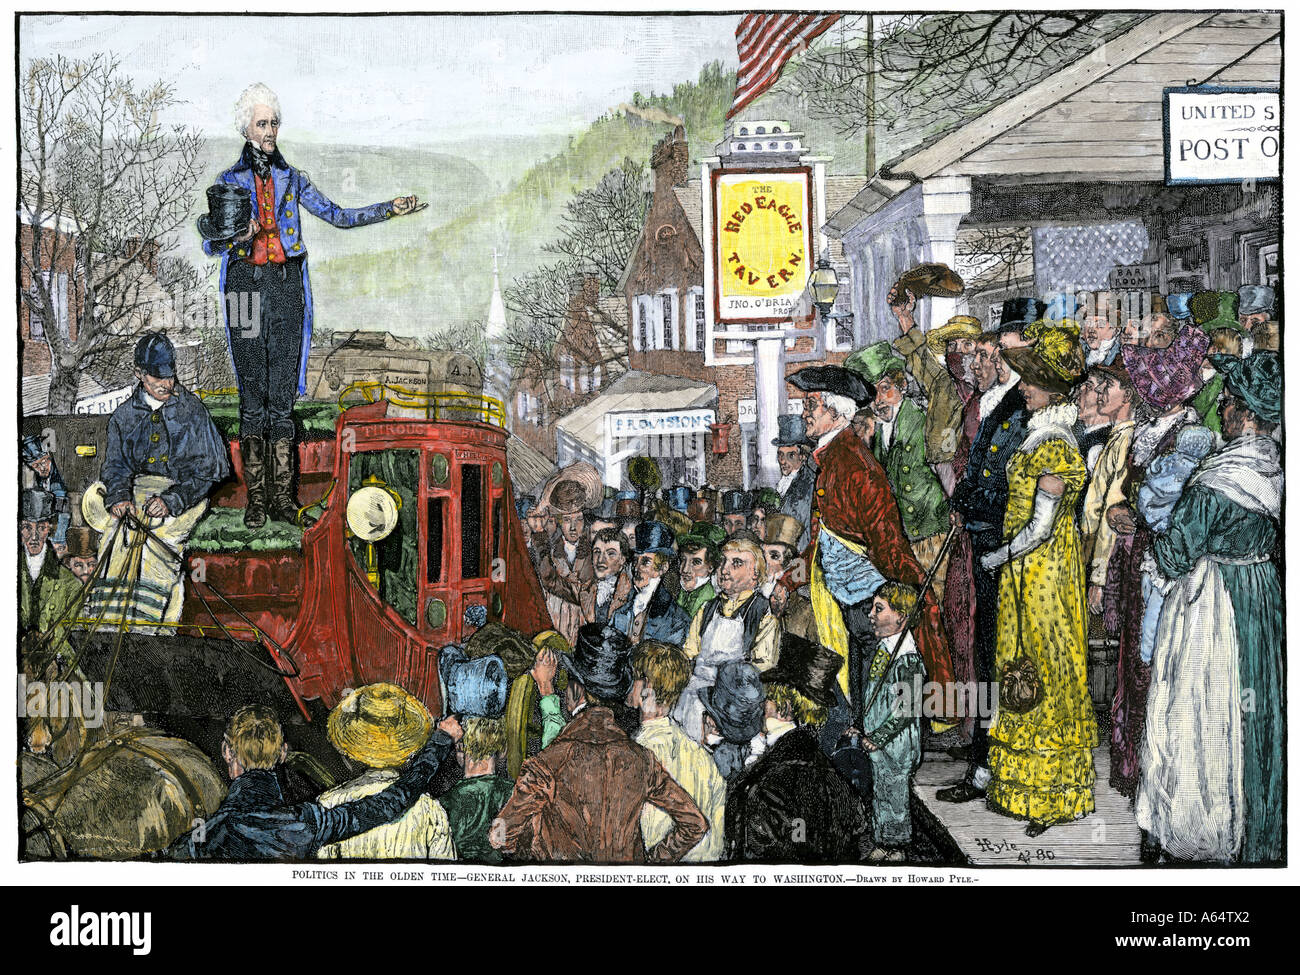 Président Andrew Jackson fait un discours sur son chemin à Washington DC. À la main, gravure sur bois d'un Howard Pyle illustration Banque D'Images